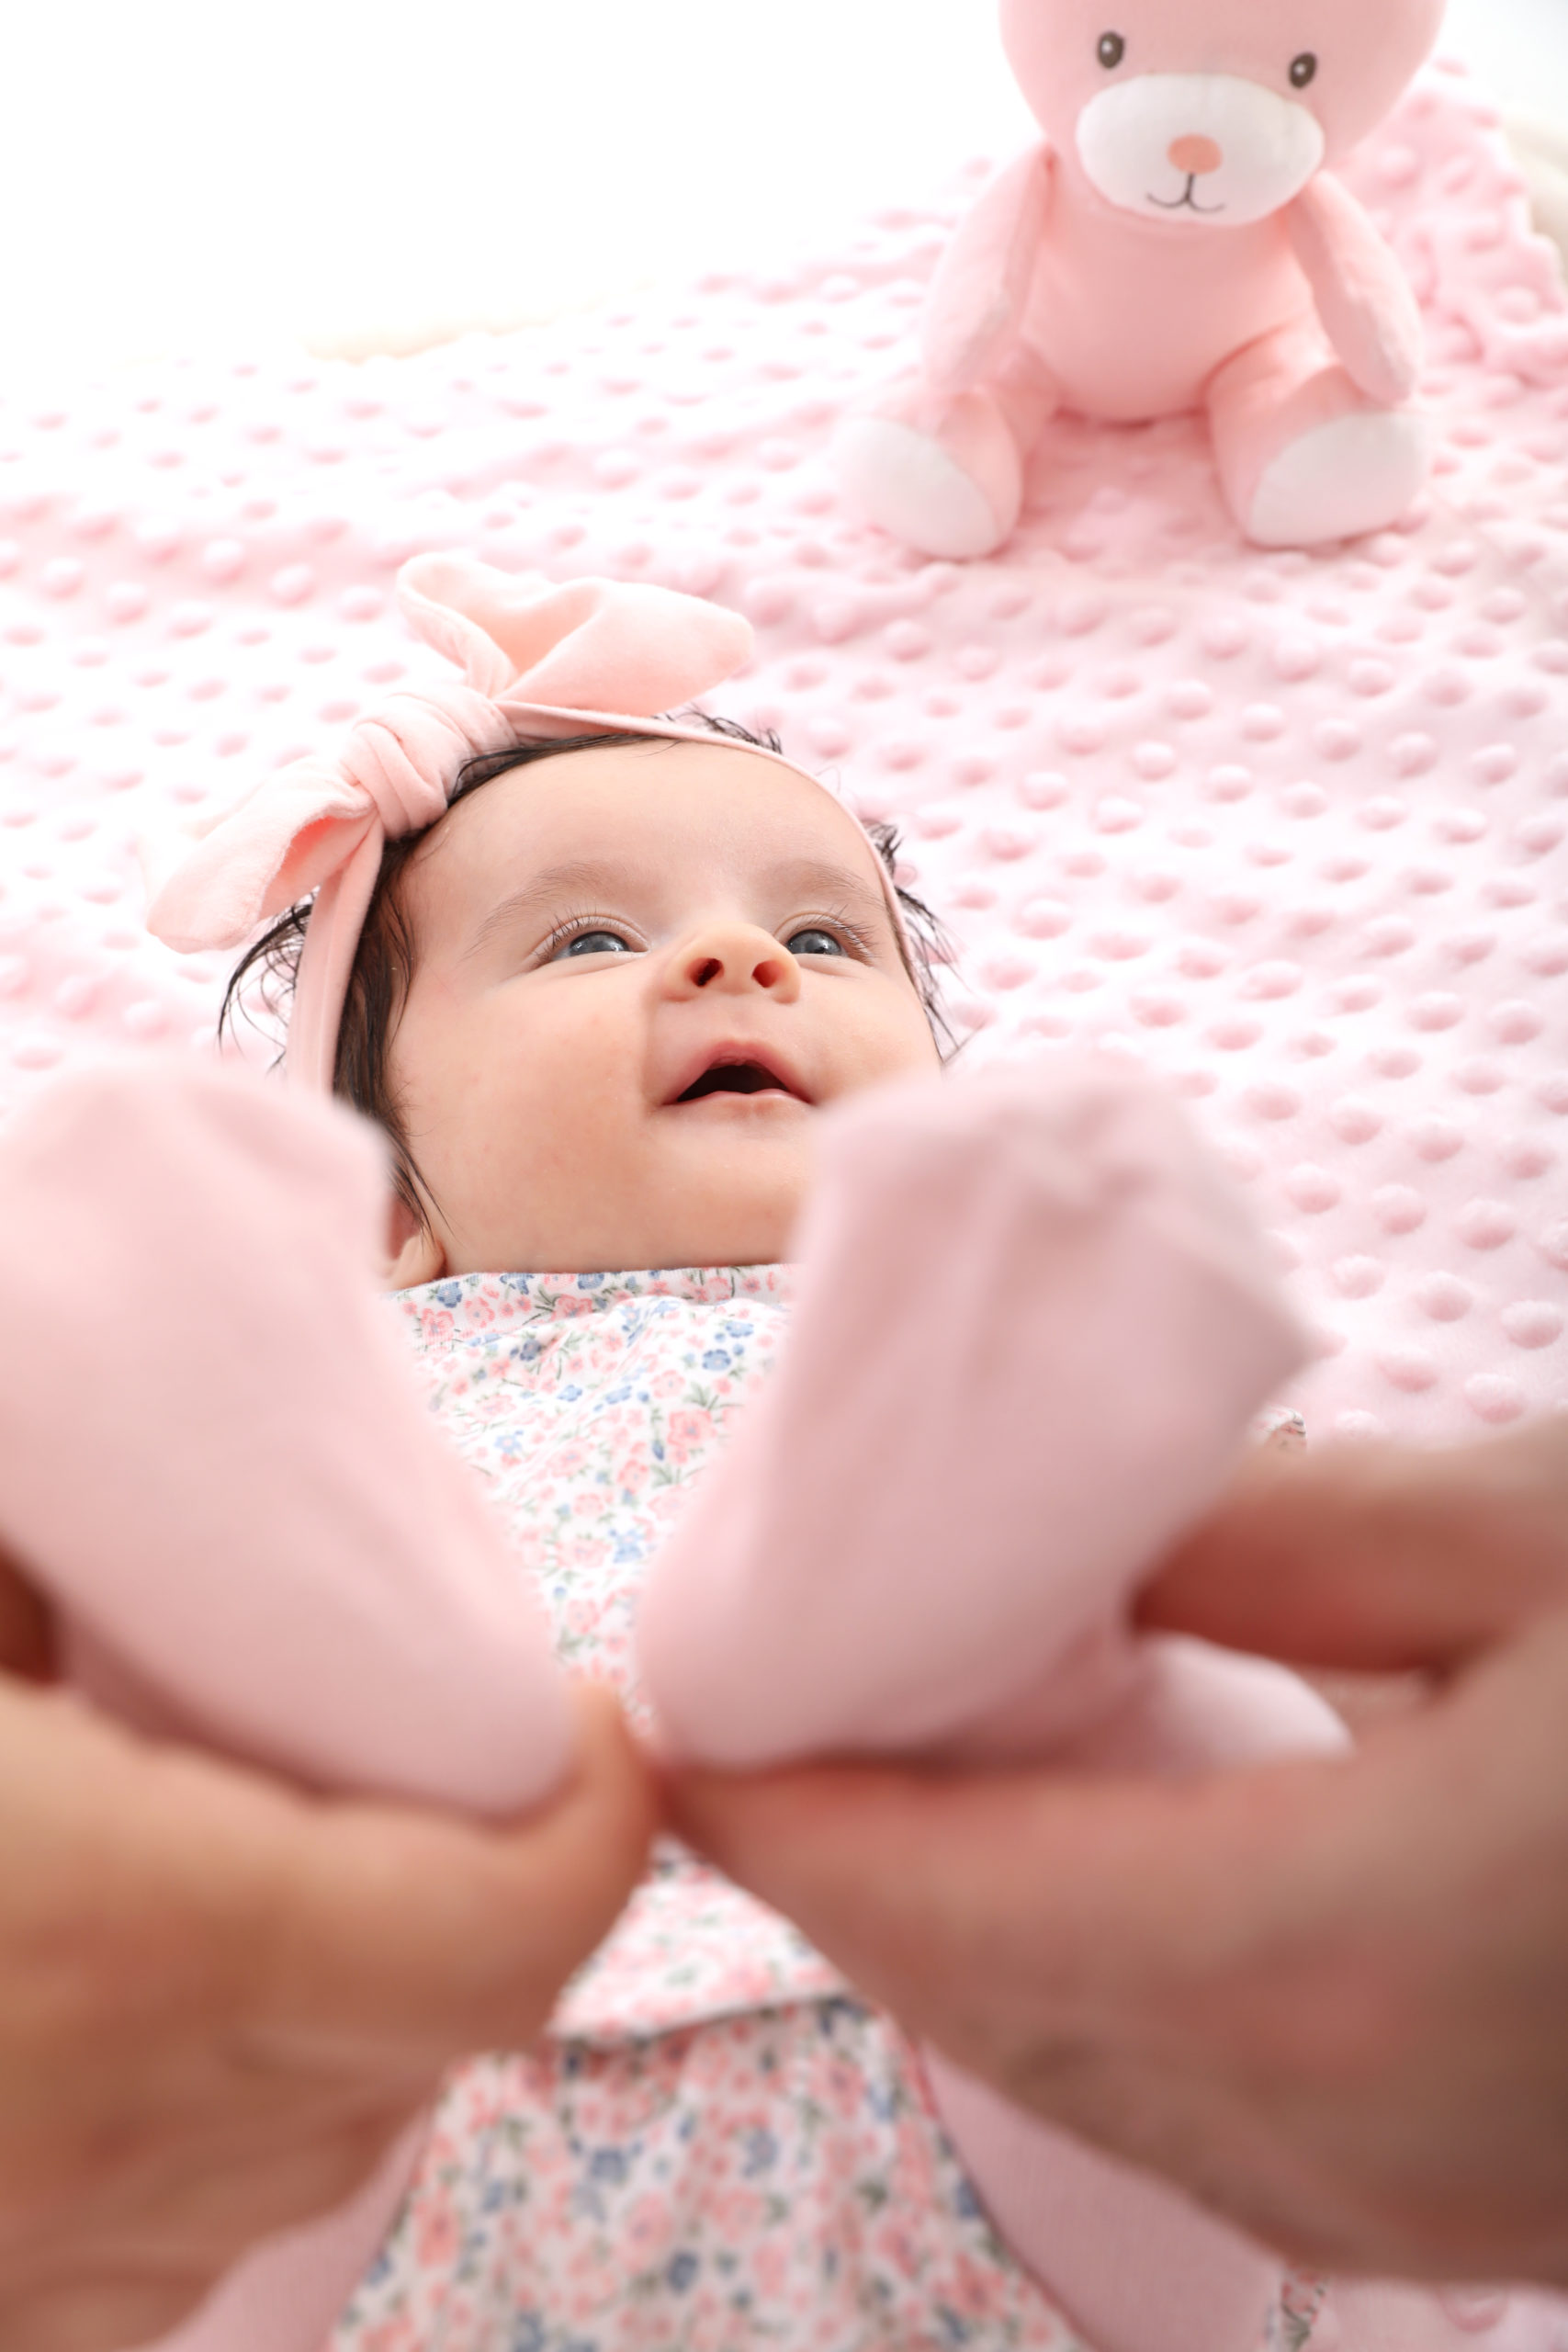 Süße einmonatige rosa Baby im Studio von New Age Fotografie. Das Baby liegt auf einem rosa Hintergrund und trägt ein rosa Kleidchen. Sie hat große, blaue Augen und ein süßes Lächeln